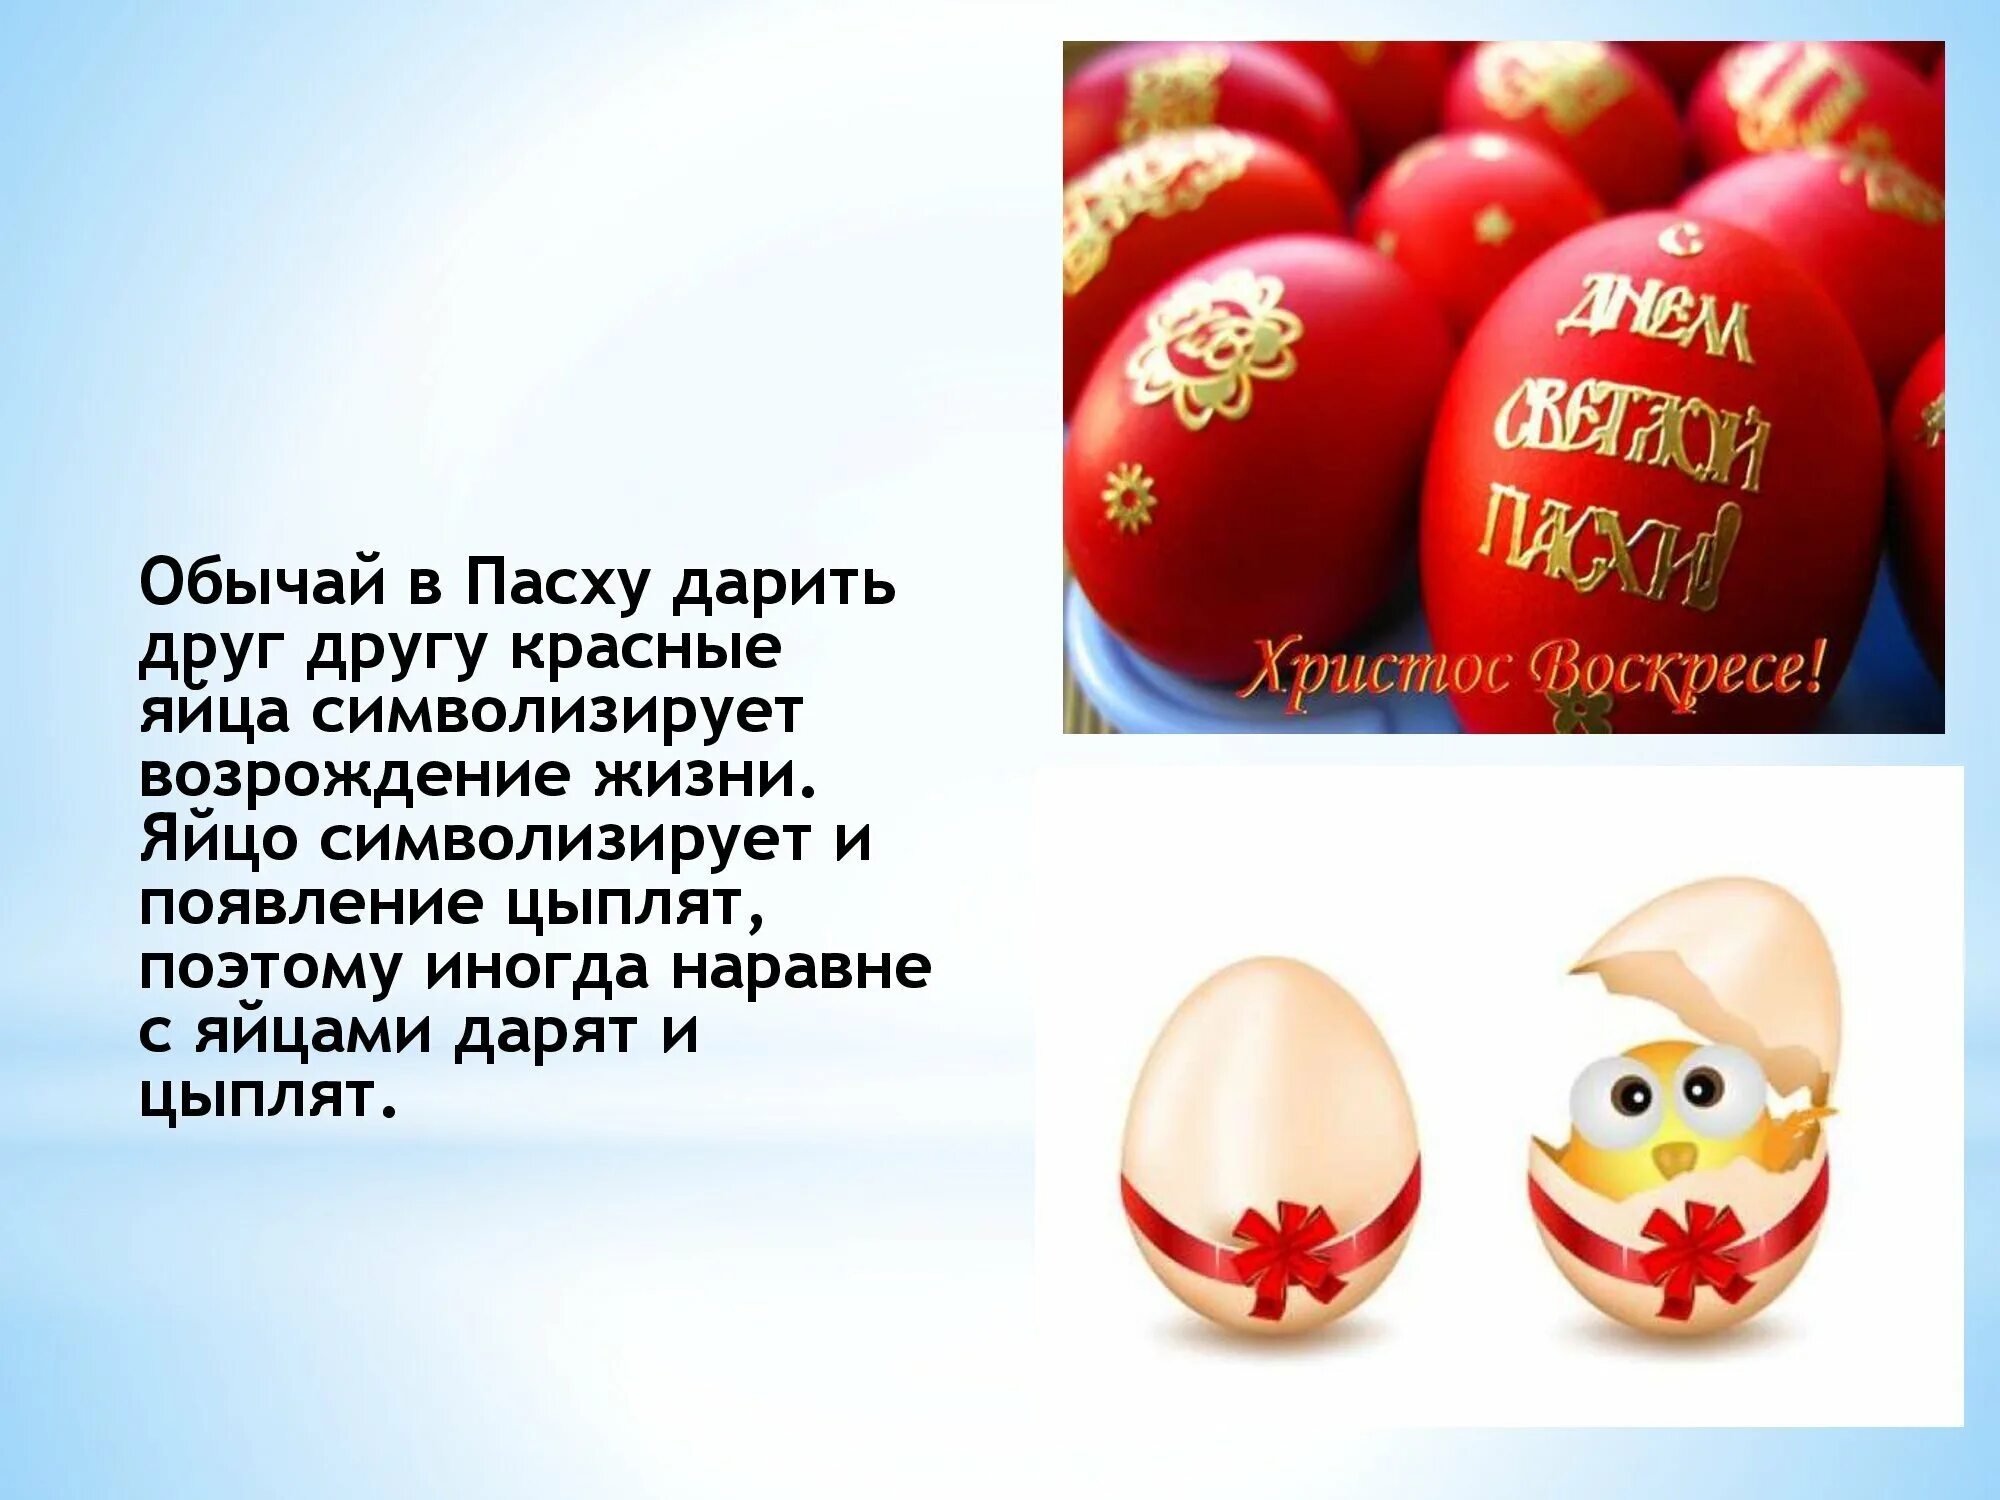 Красные яйца на Пасху. Яйцо символ Пасхи. Красное яйцо символ Пасхи. Обычай в Пасху дарить красные яйца символизирует Возрождение жизни. Яички стих